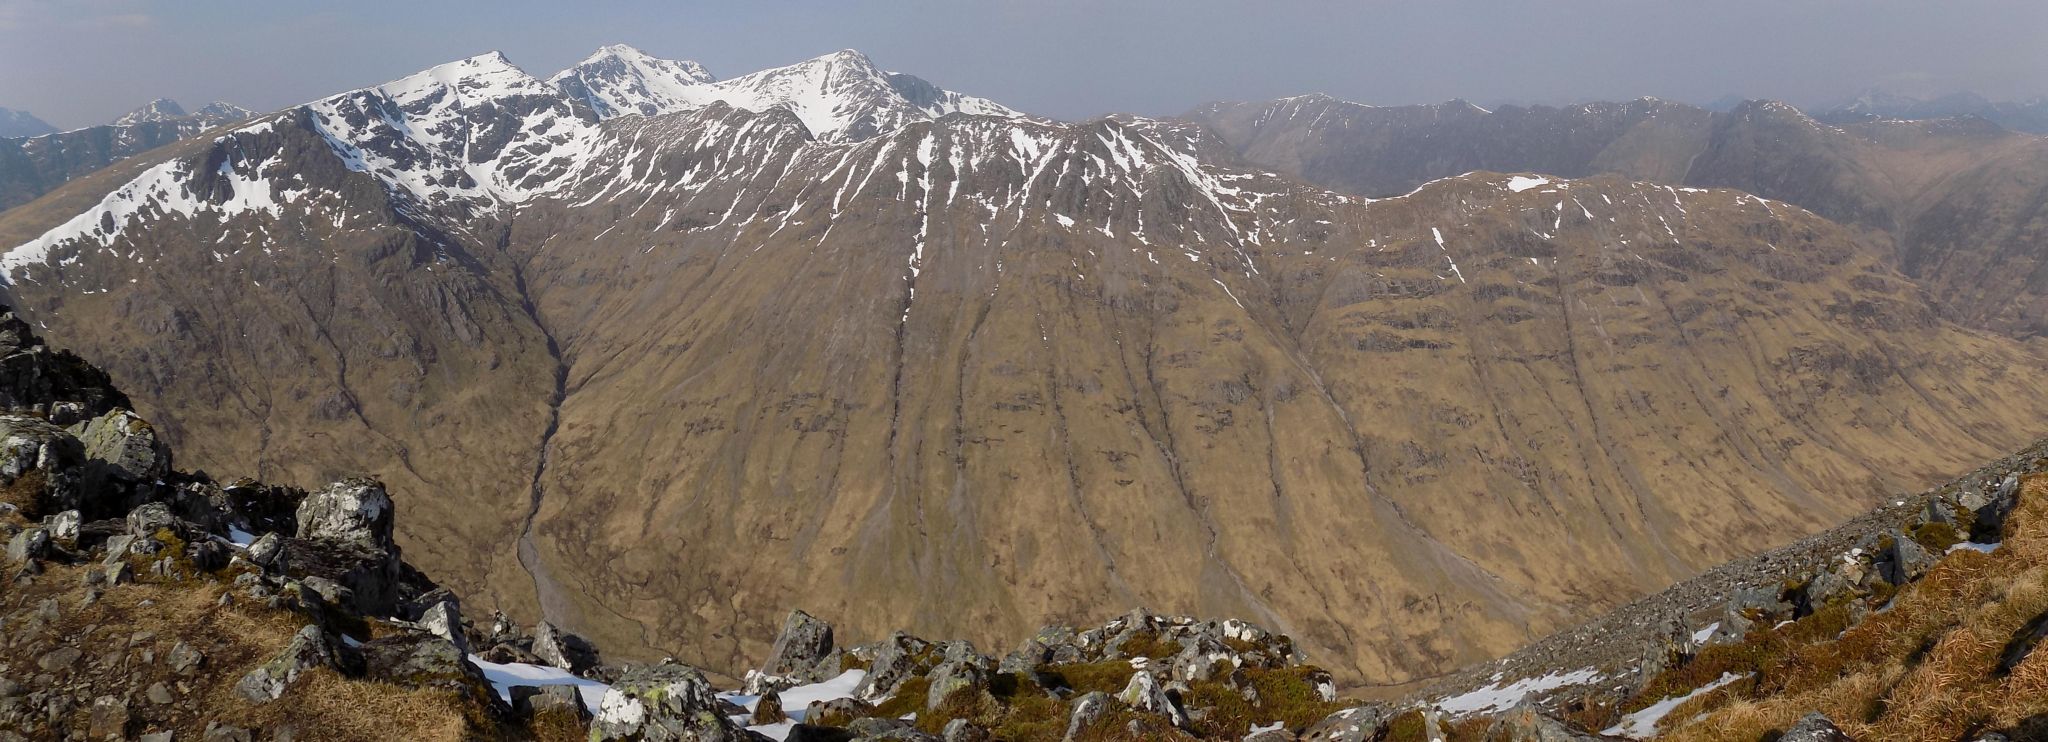 Stob Coire Sgreamhach, Bidean nam Bian and  Stob Coire nan Lochan above Beinn Fhada from Buachaille Etive Beag